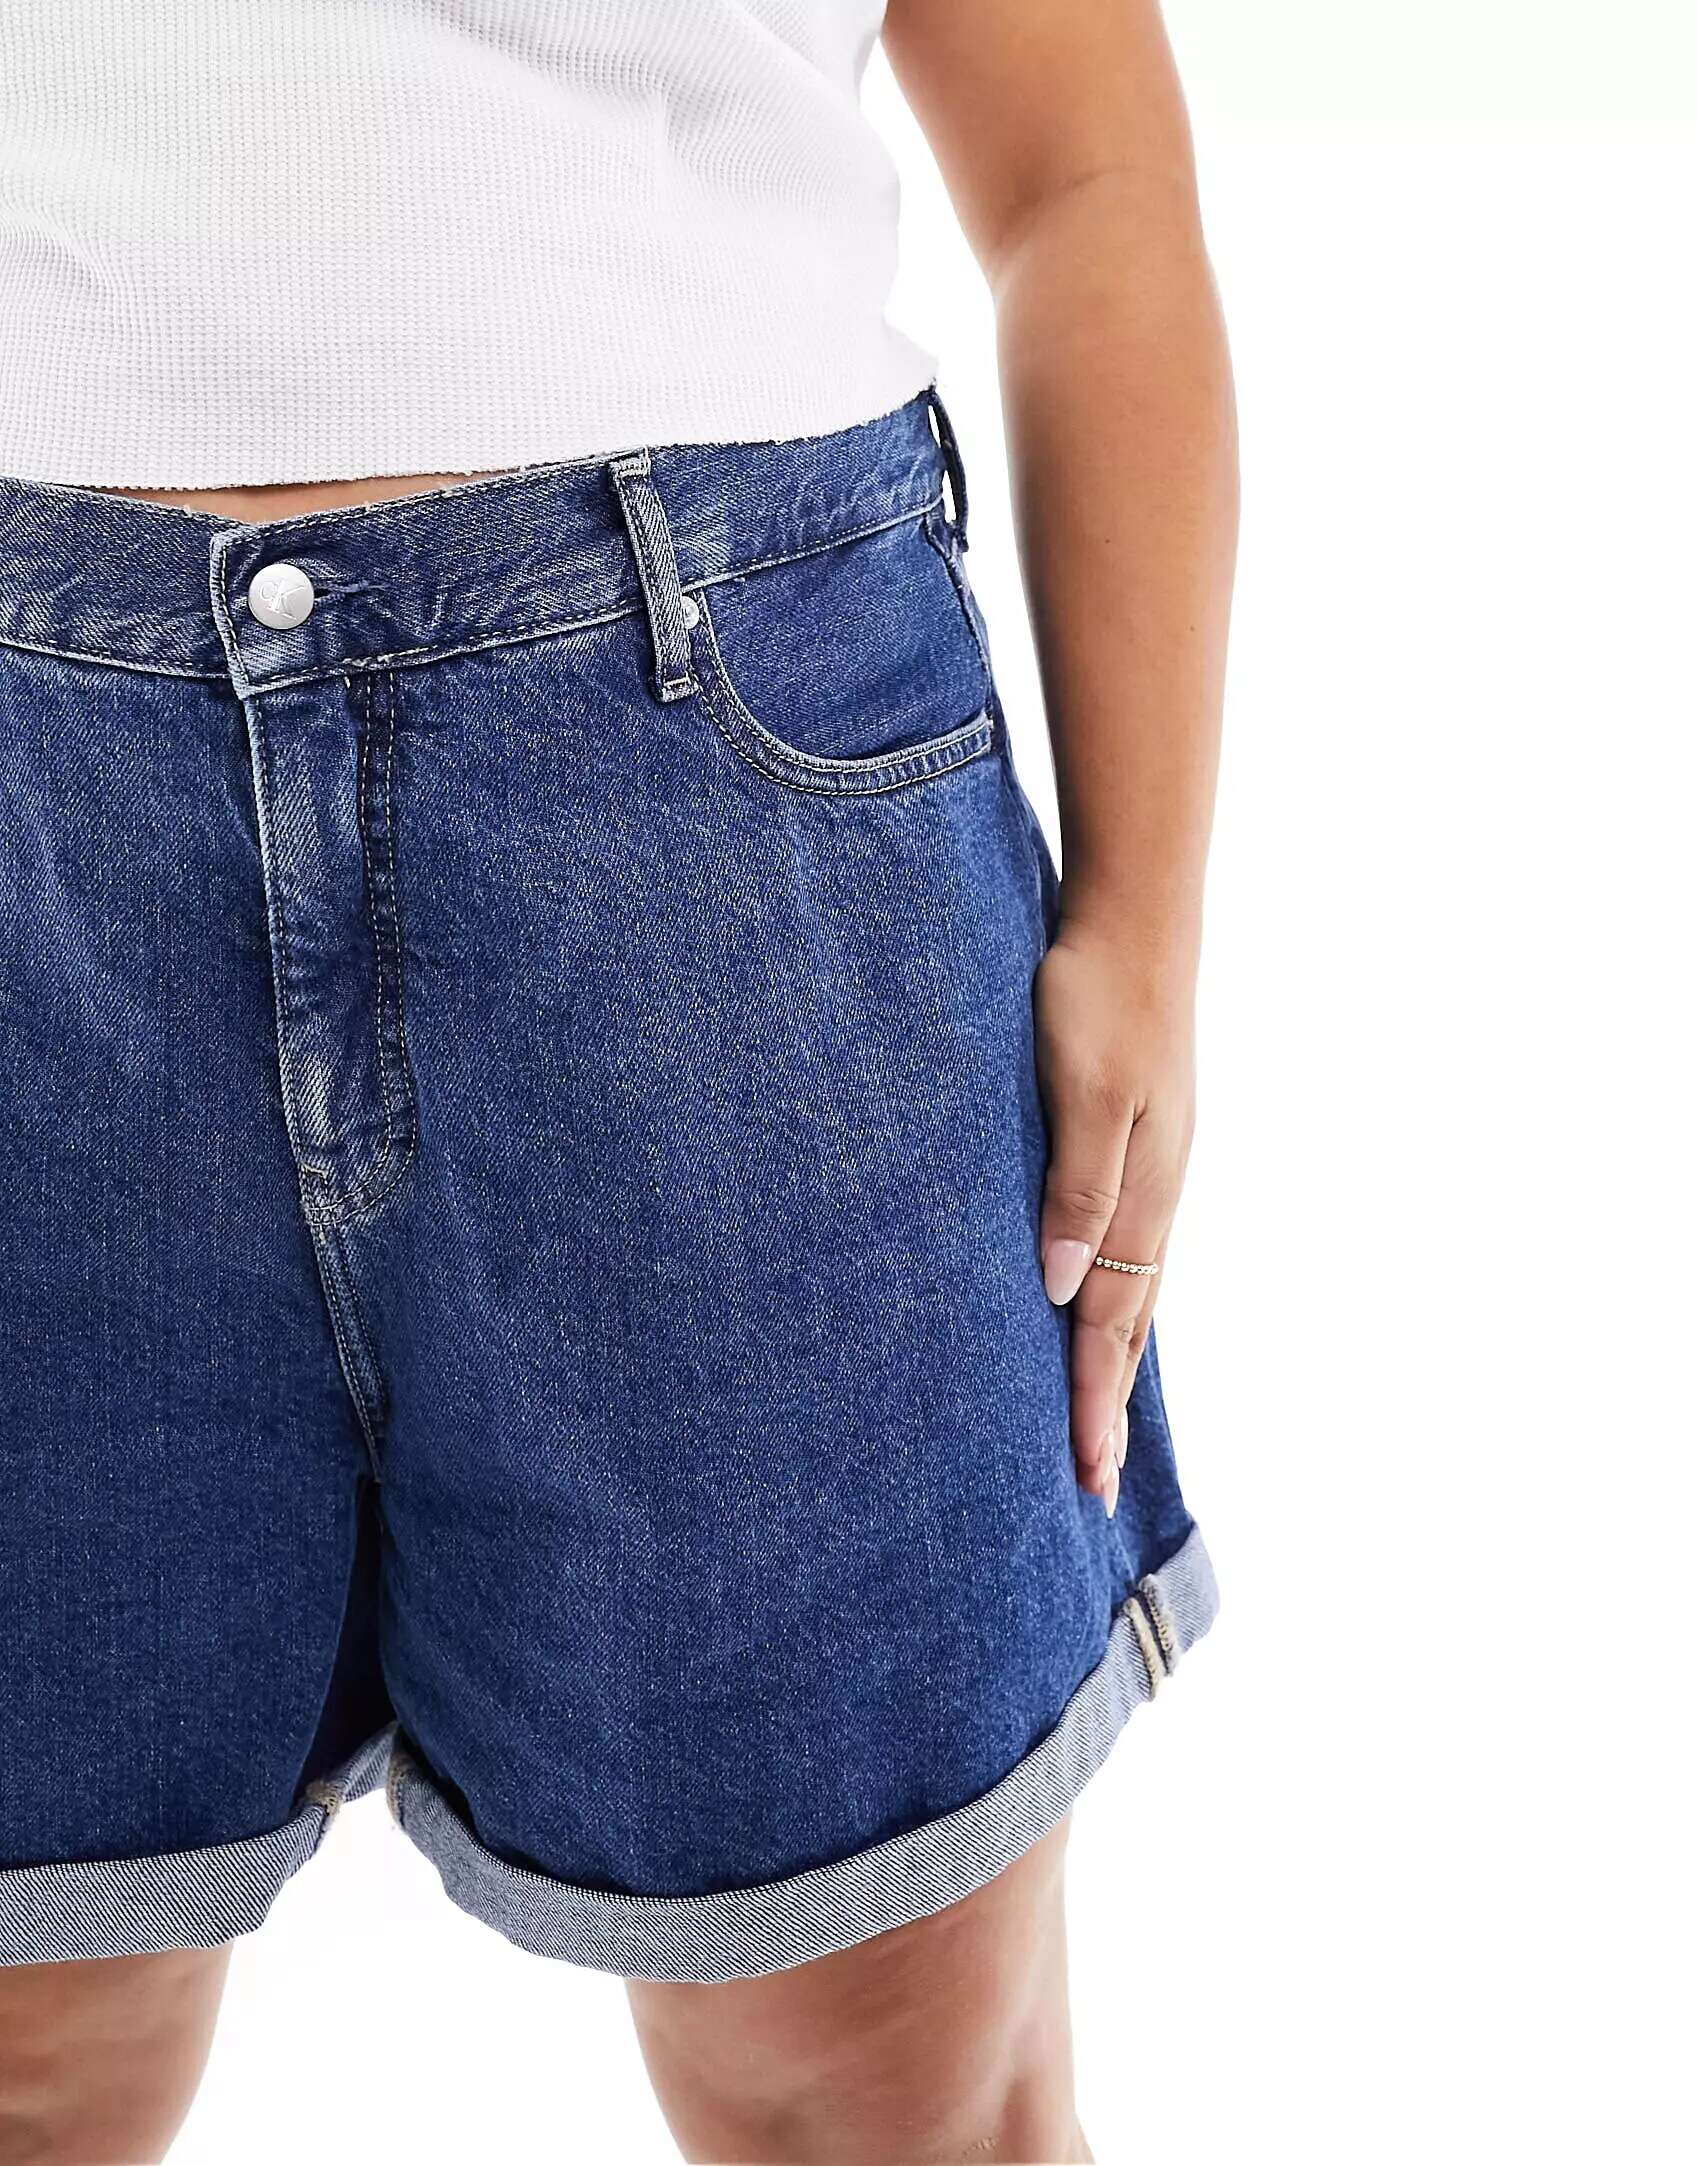 Шорты для мамы Calvin Klein Jeans Plus цвета индиго трусы шорты calvin klein средняя посадка размер l серый